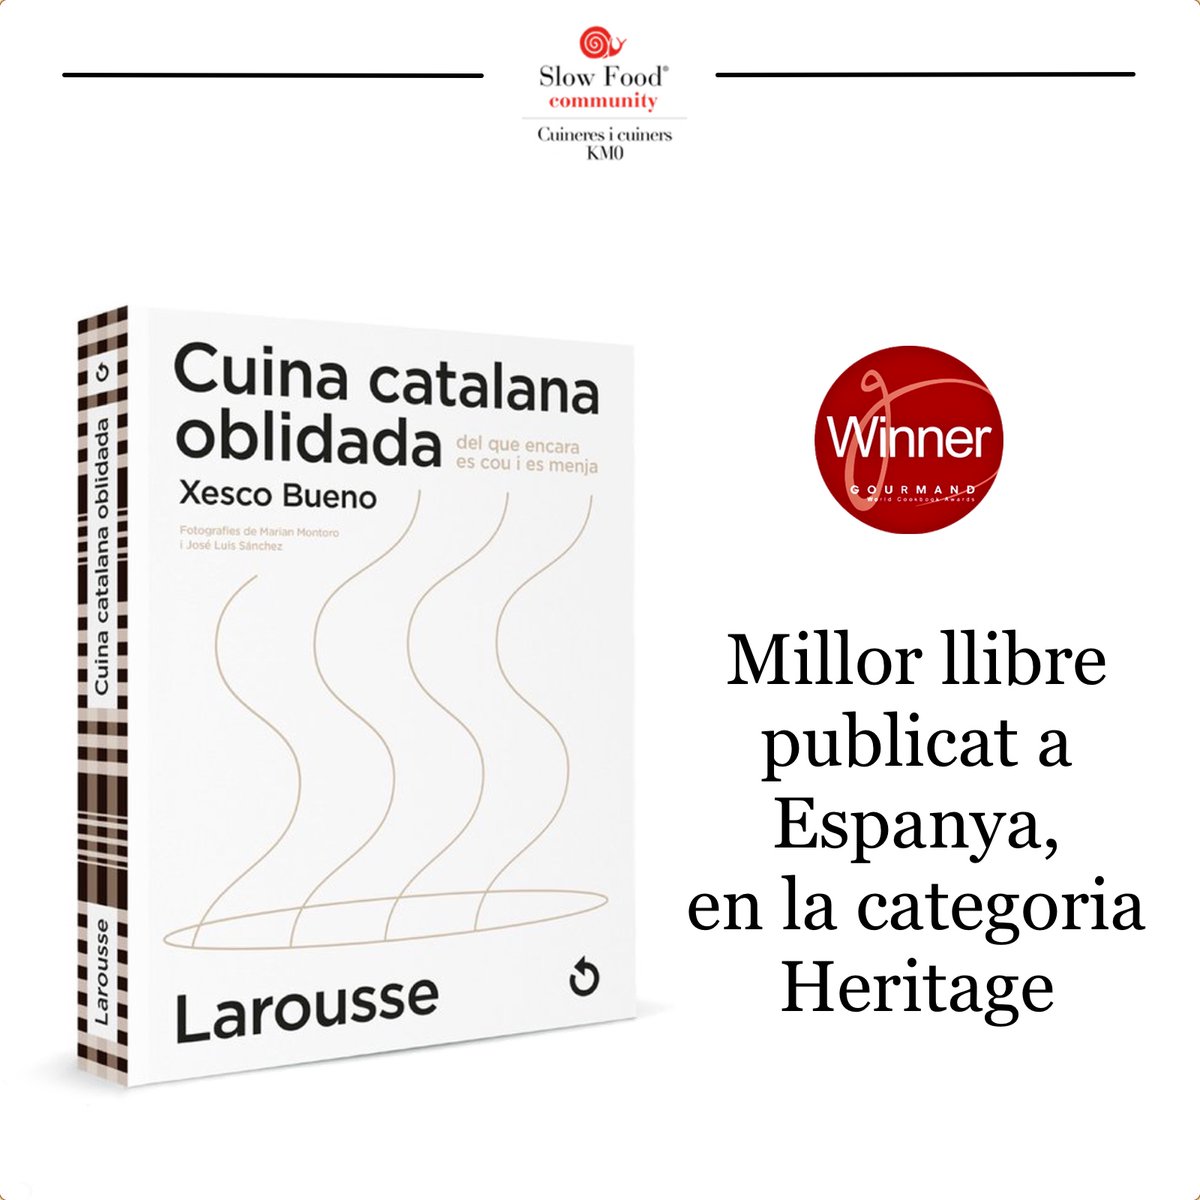 Des de @cuinerskm0 volem felicitar de tot cor al gran @gastromimix i el seu llibre 'Cuina catalana oblidada' que ha estat mereixedor del Premi al millor llibre publicat a Espanya, atorgat pels World Cookbook Awards!! 🏅 #cuinacatalana #km0